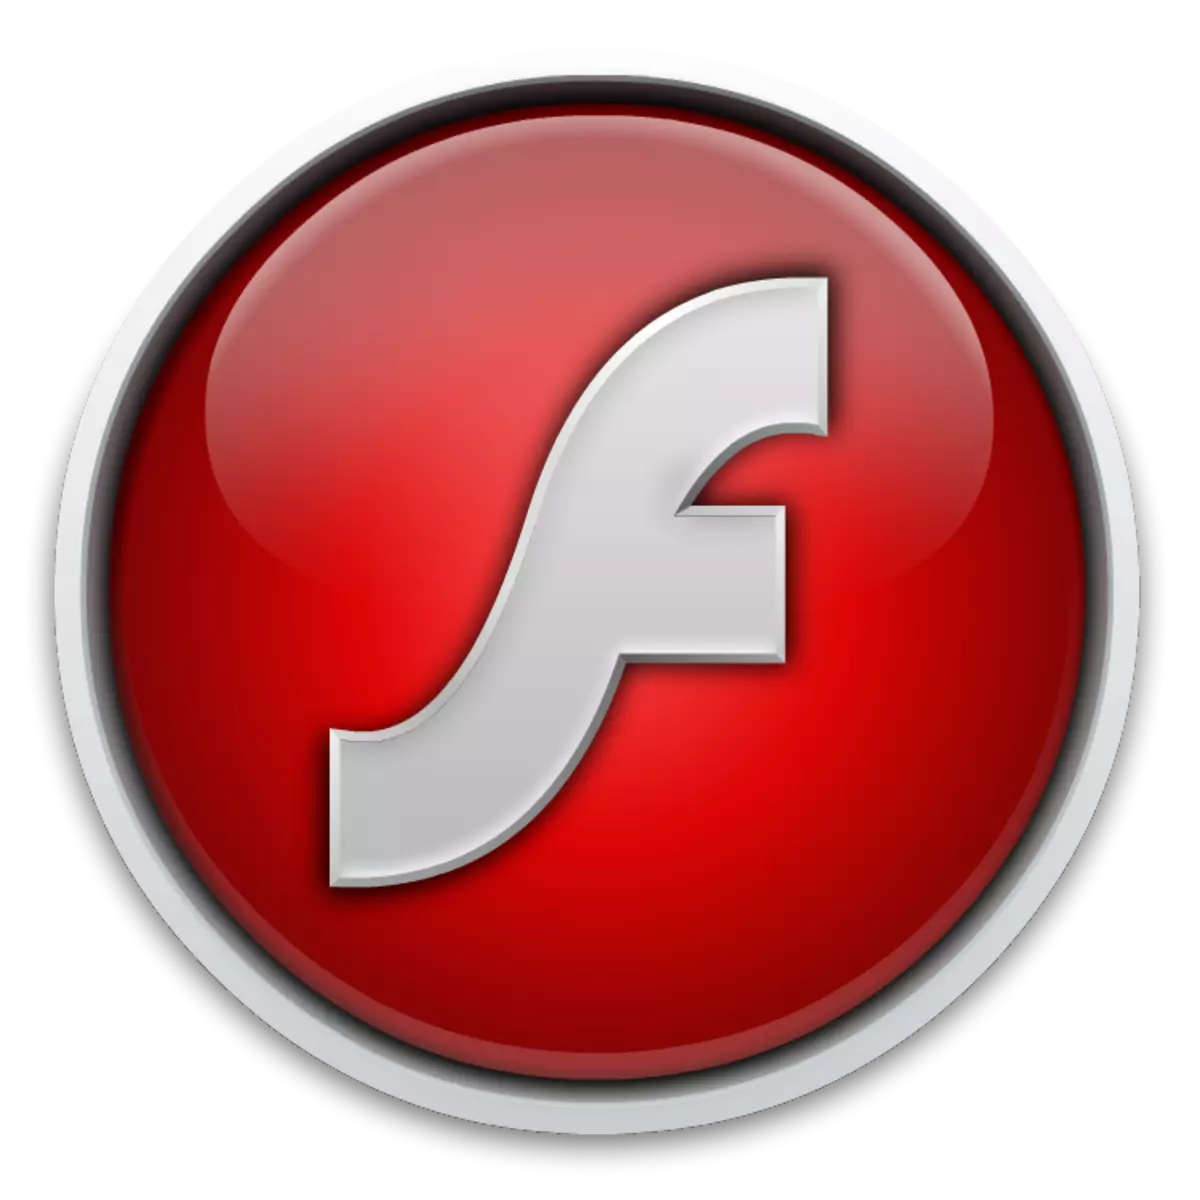 Ungabuyekeza kanjani i-Adobe Flash Player e-Opera: Izindlela ezi-3 ezilula